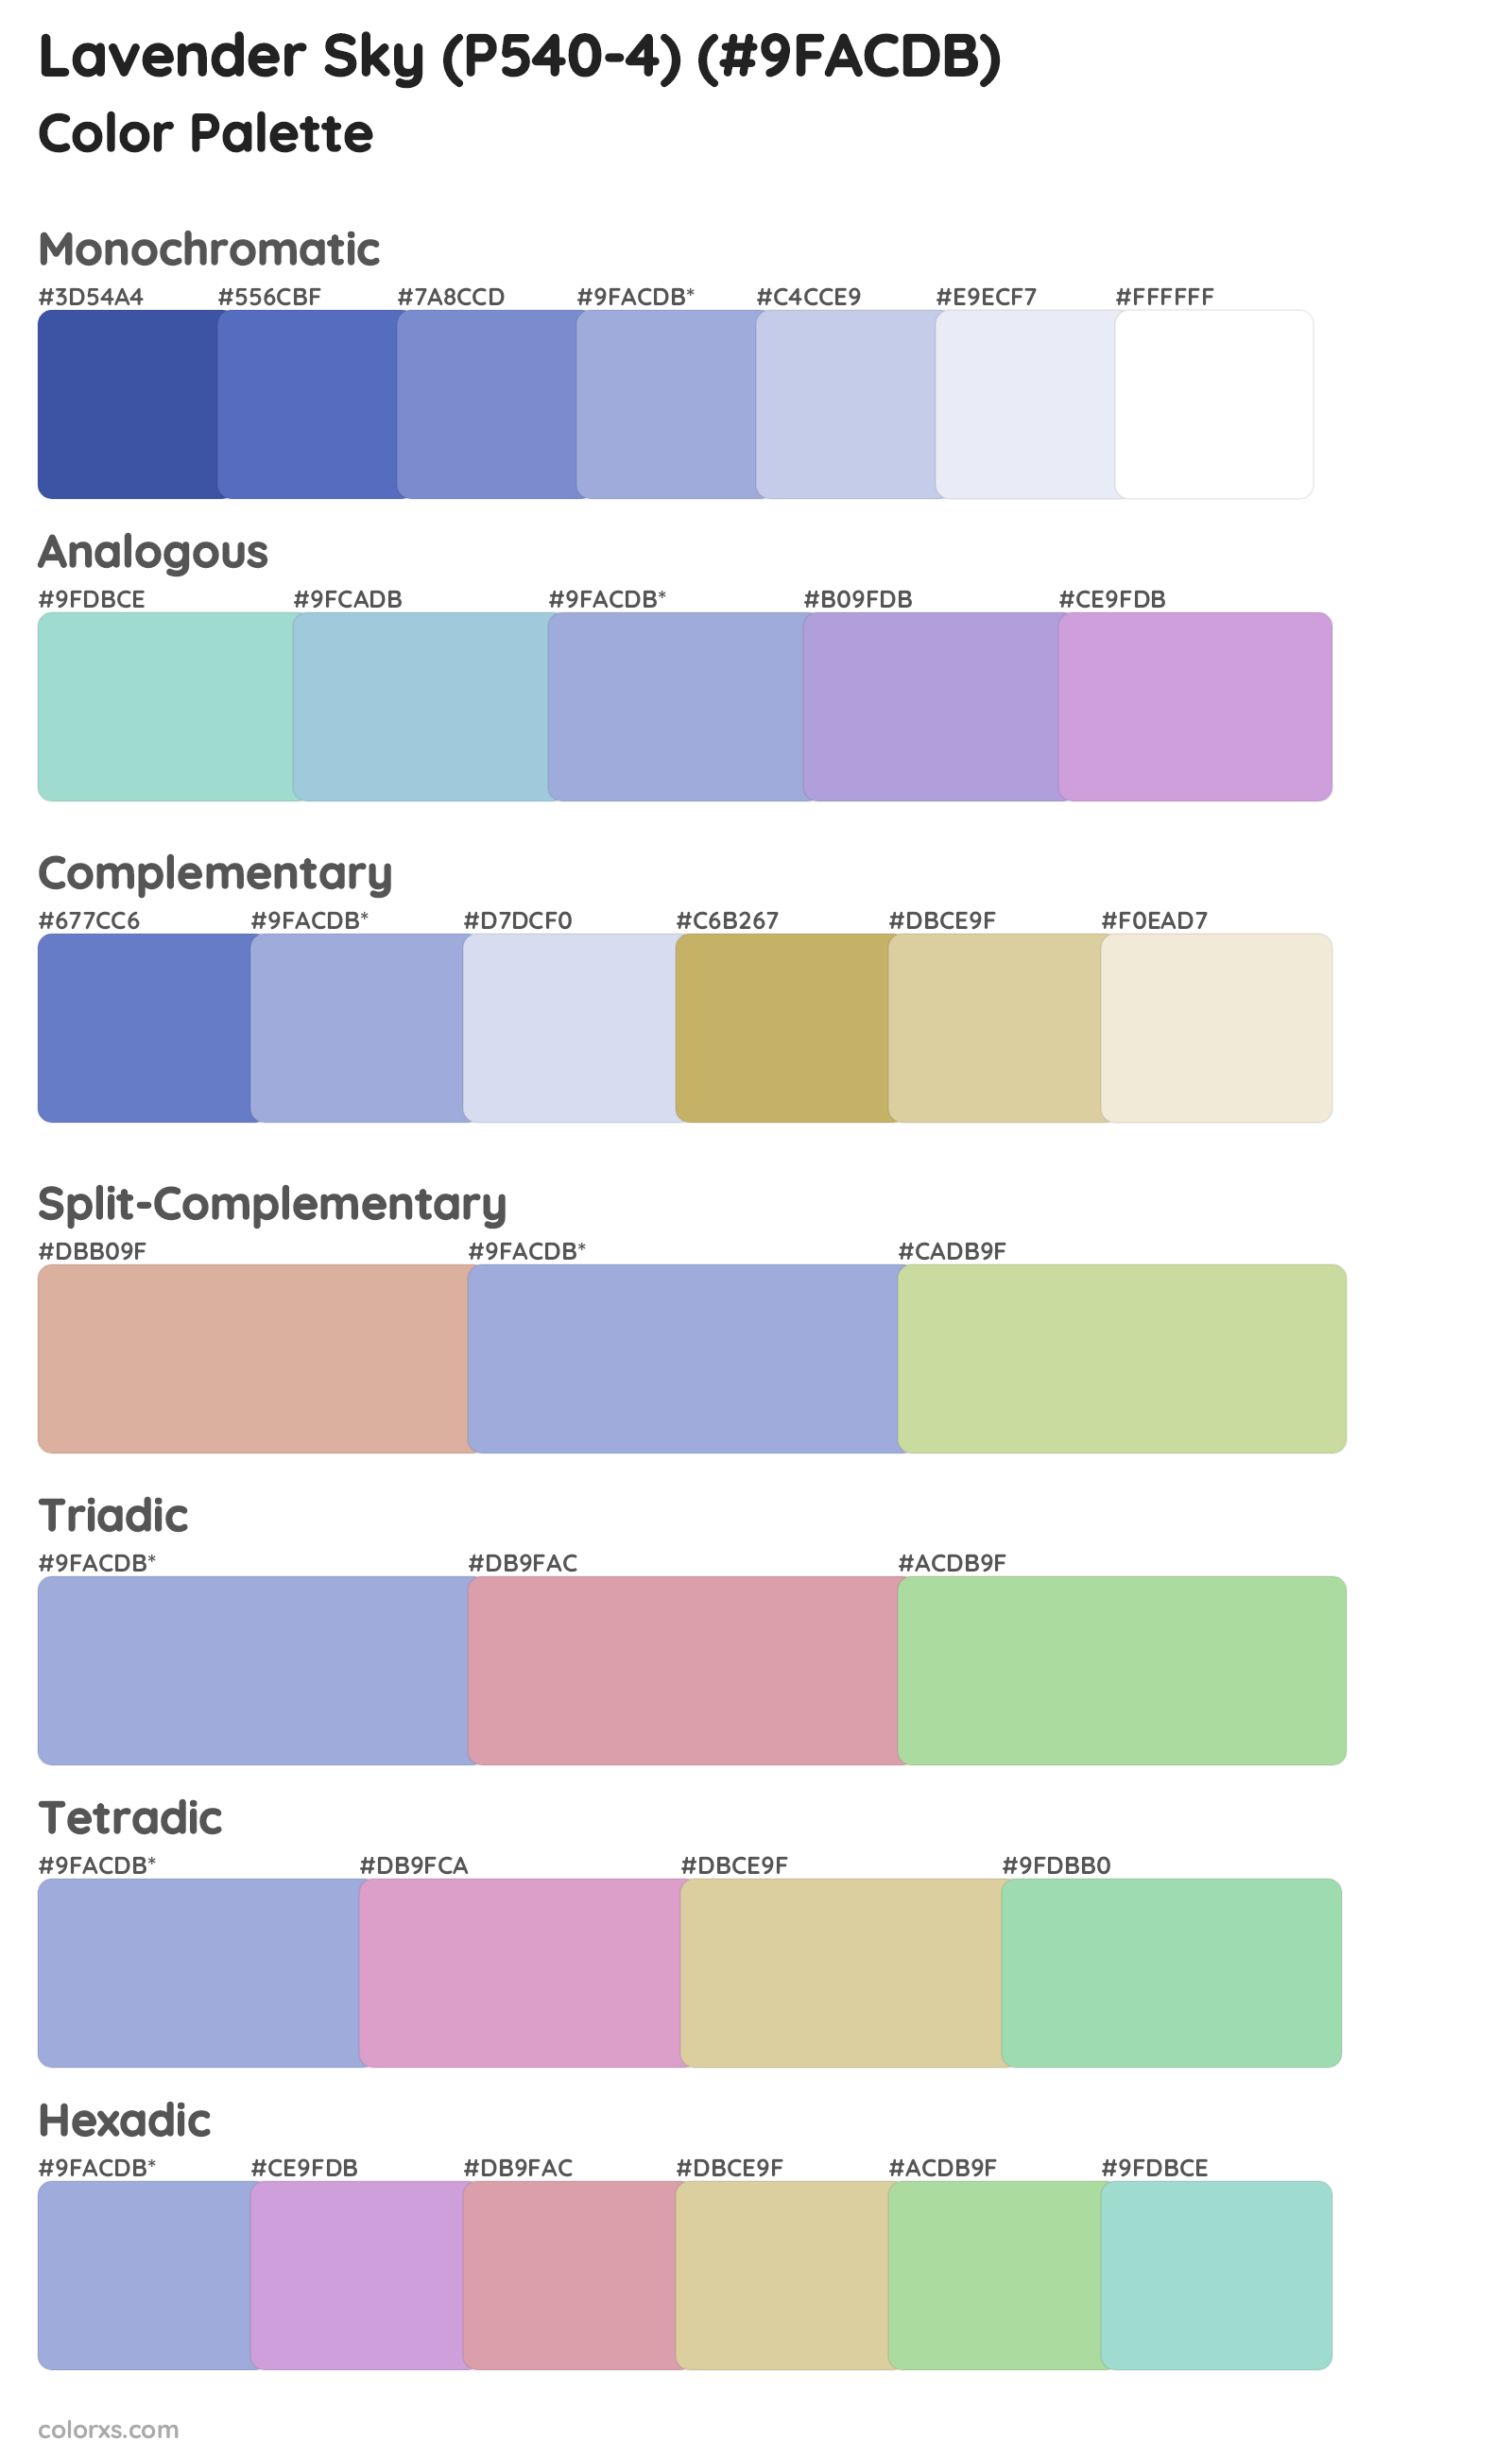 Lavender Sky (P540-4) Color Scheme Palettes